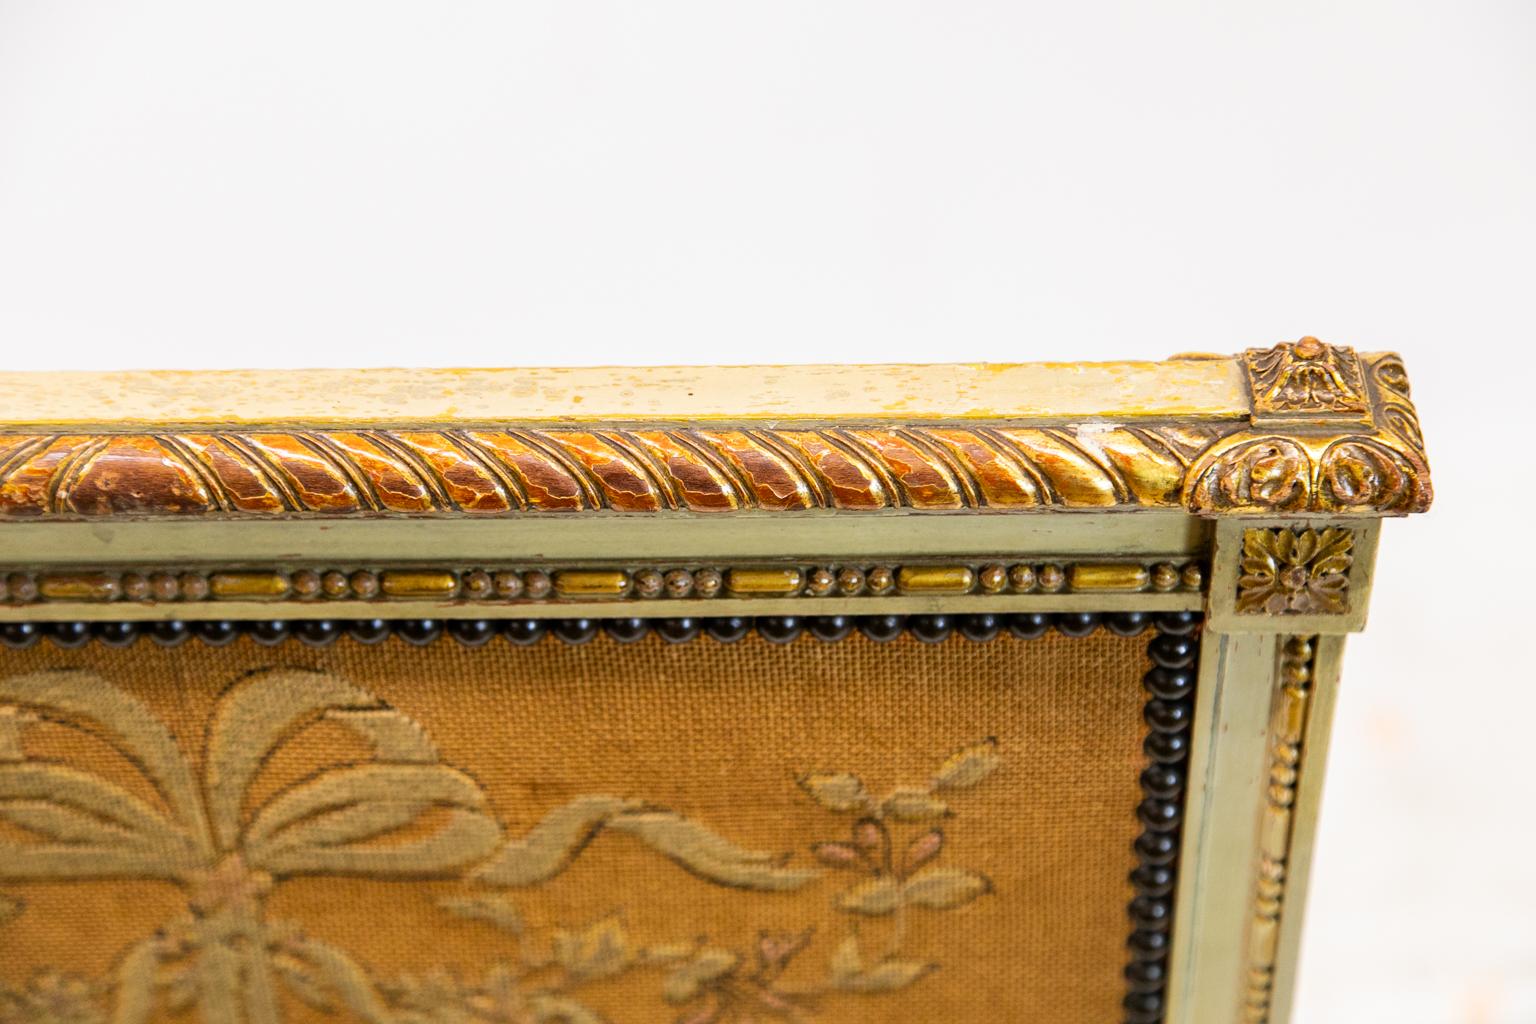 Der Rahmen dieses französischen Kaminschirms ist cremefarben gestrichen und hat eine geschnitzte, vergoldete und gadronierte Oberleiste. Die mittlere Handarbeitstafel ist mit Leisten und geschnitzten Kugel- und Kapselformen umrahmt. Die Mitte ist